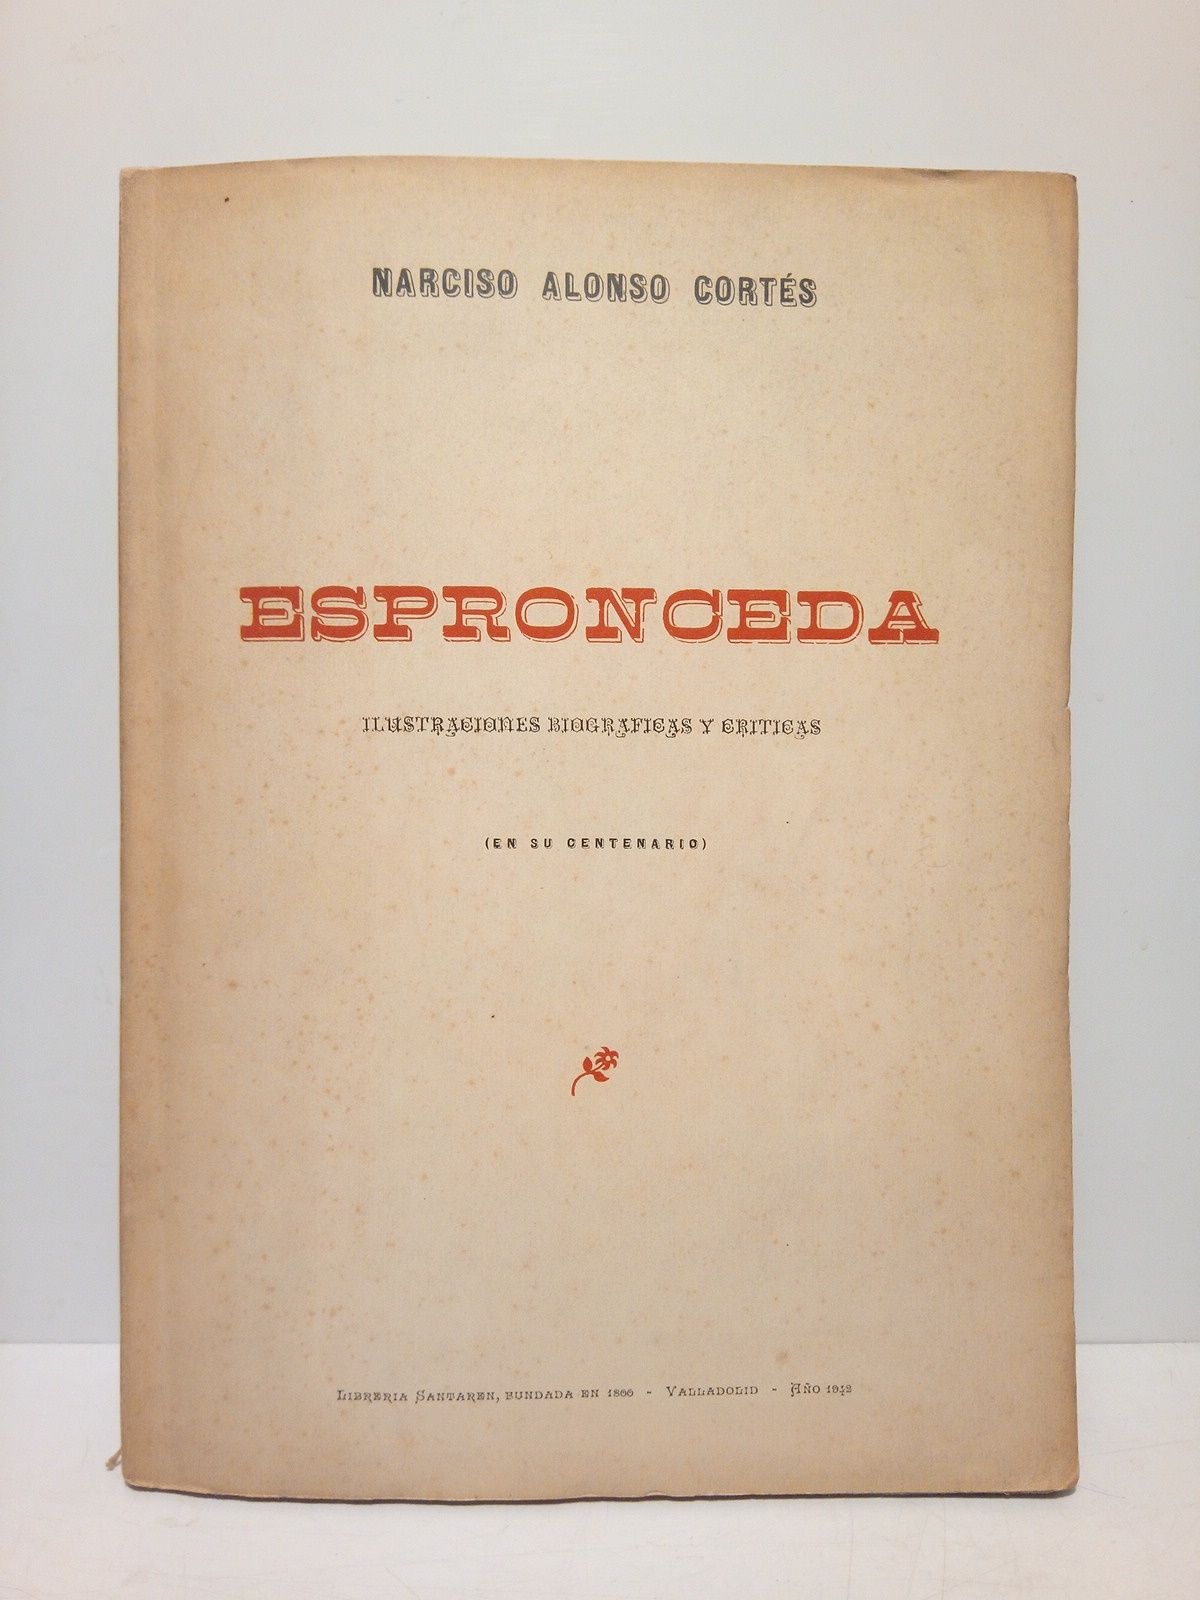 ALONSO CORTES, Narciso - Espronceda: Ilustraciones biogrficas y crticas (en su Centenario)